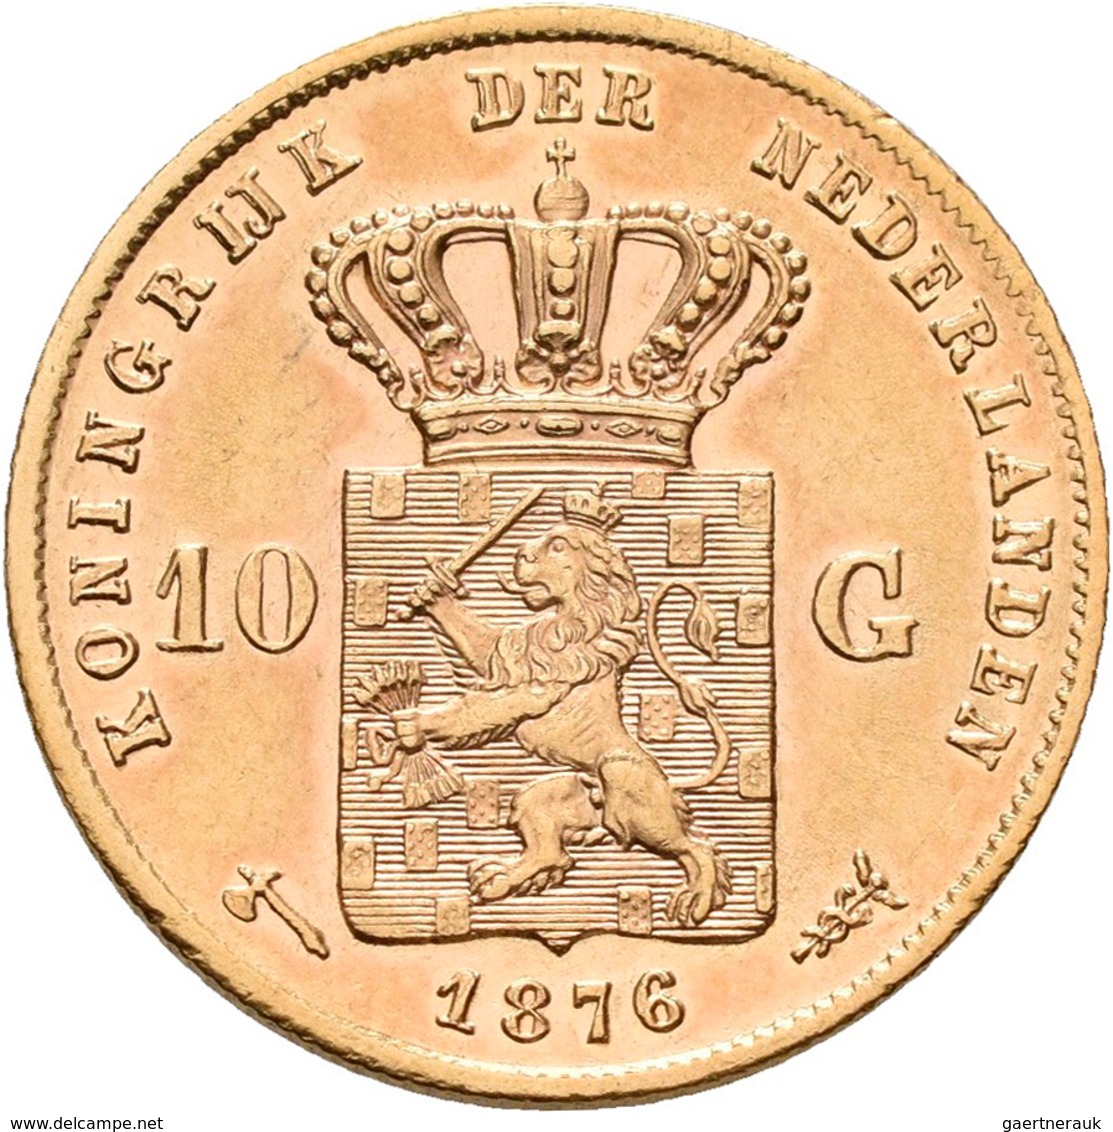 Niederlande - Anlagegold: Wilhelm III. 1849-1890: 10 Gulden 1876, KM# 106, Friedberg 342. 6,70 G, 90 - Monete D'Oro E D'Argento